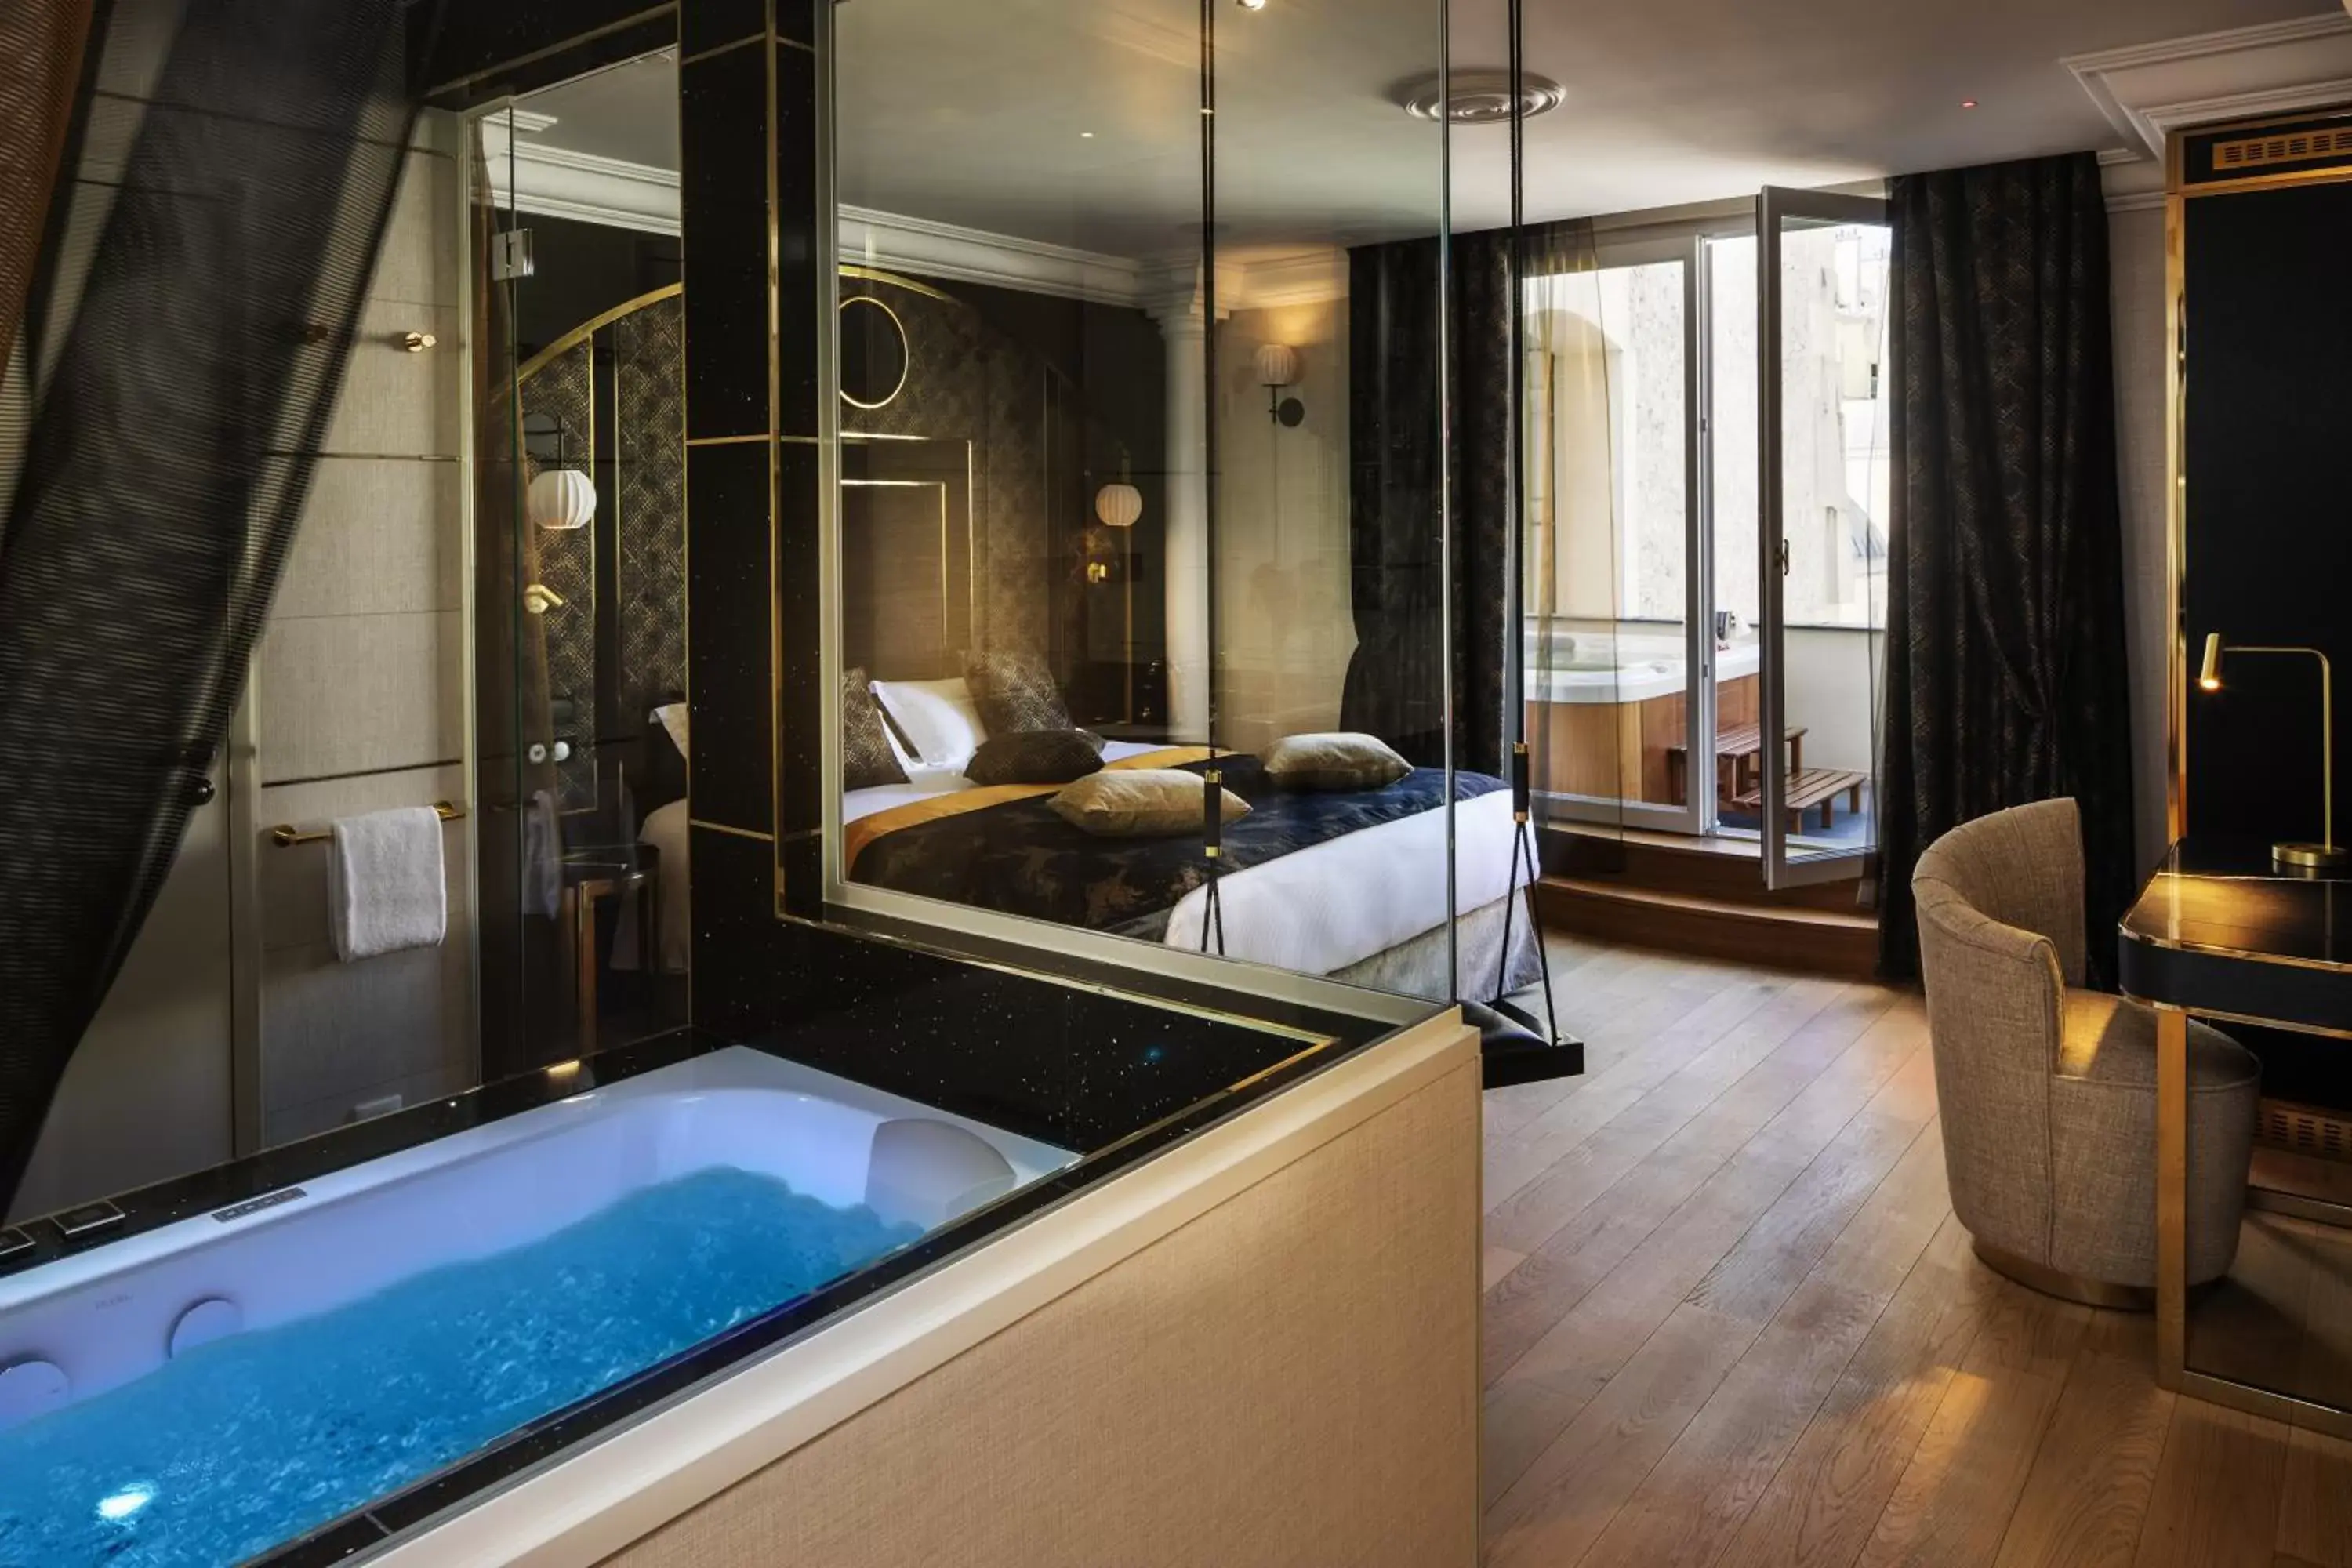 Bathroom in Paris j'Adore Hotel & Spa